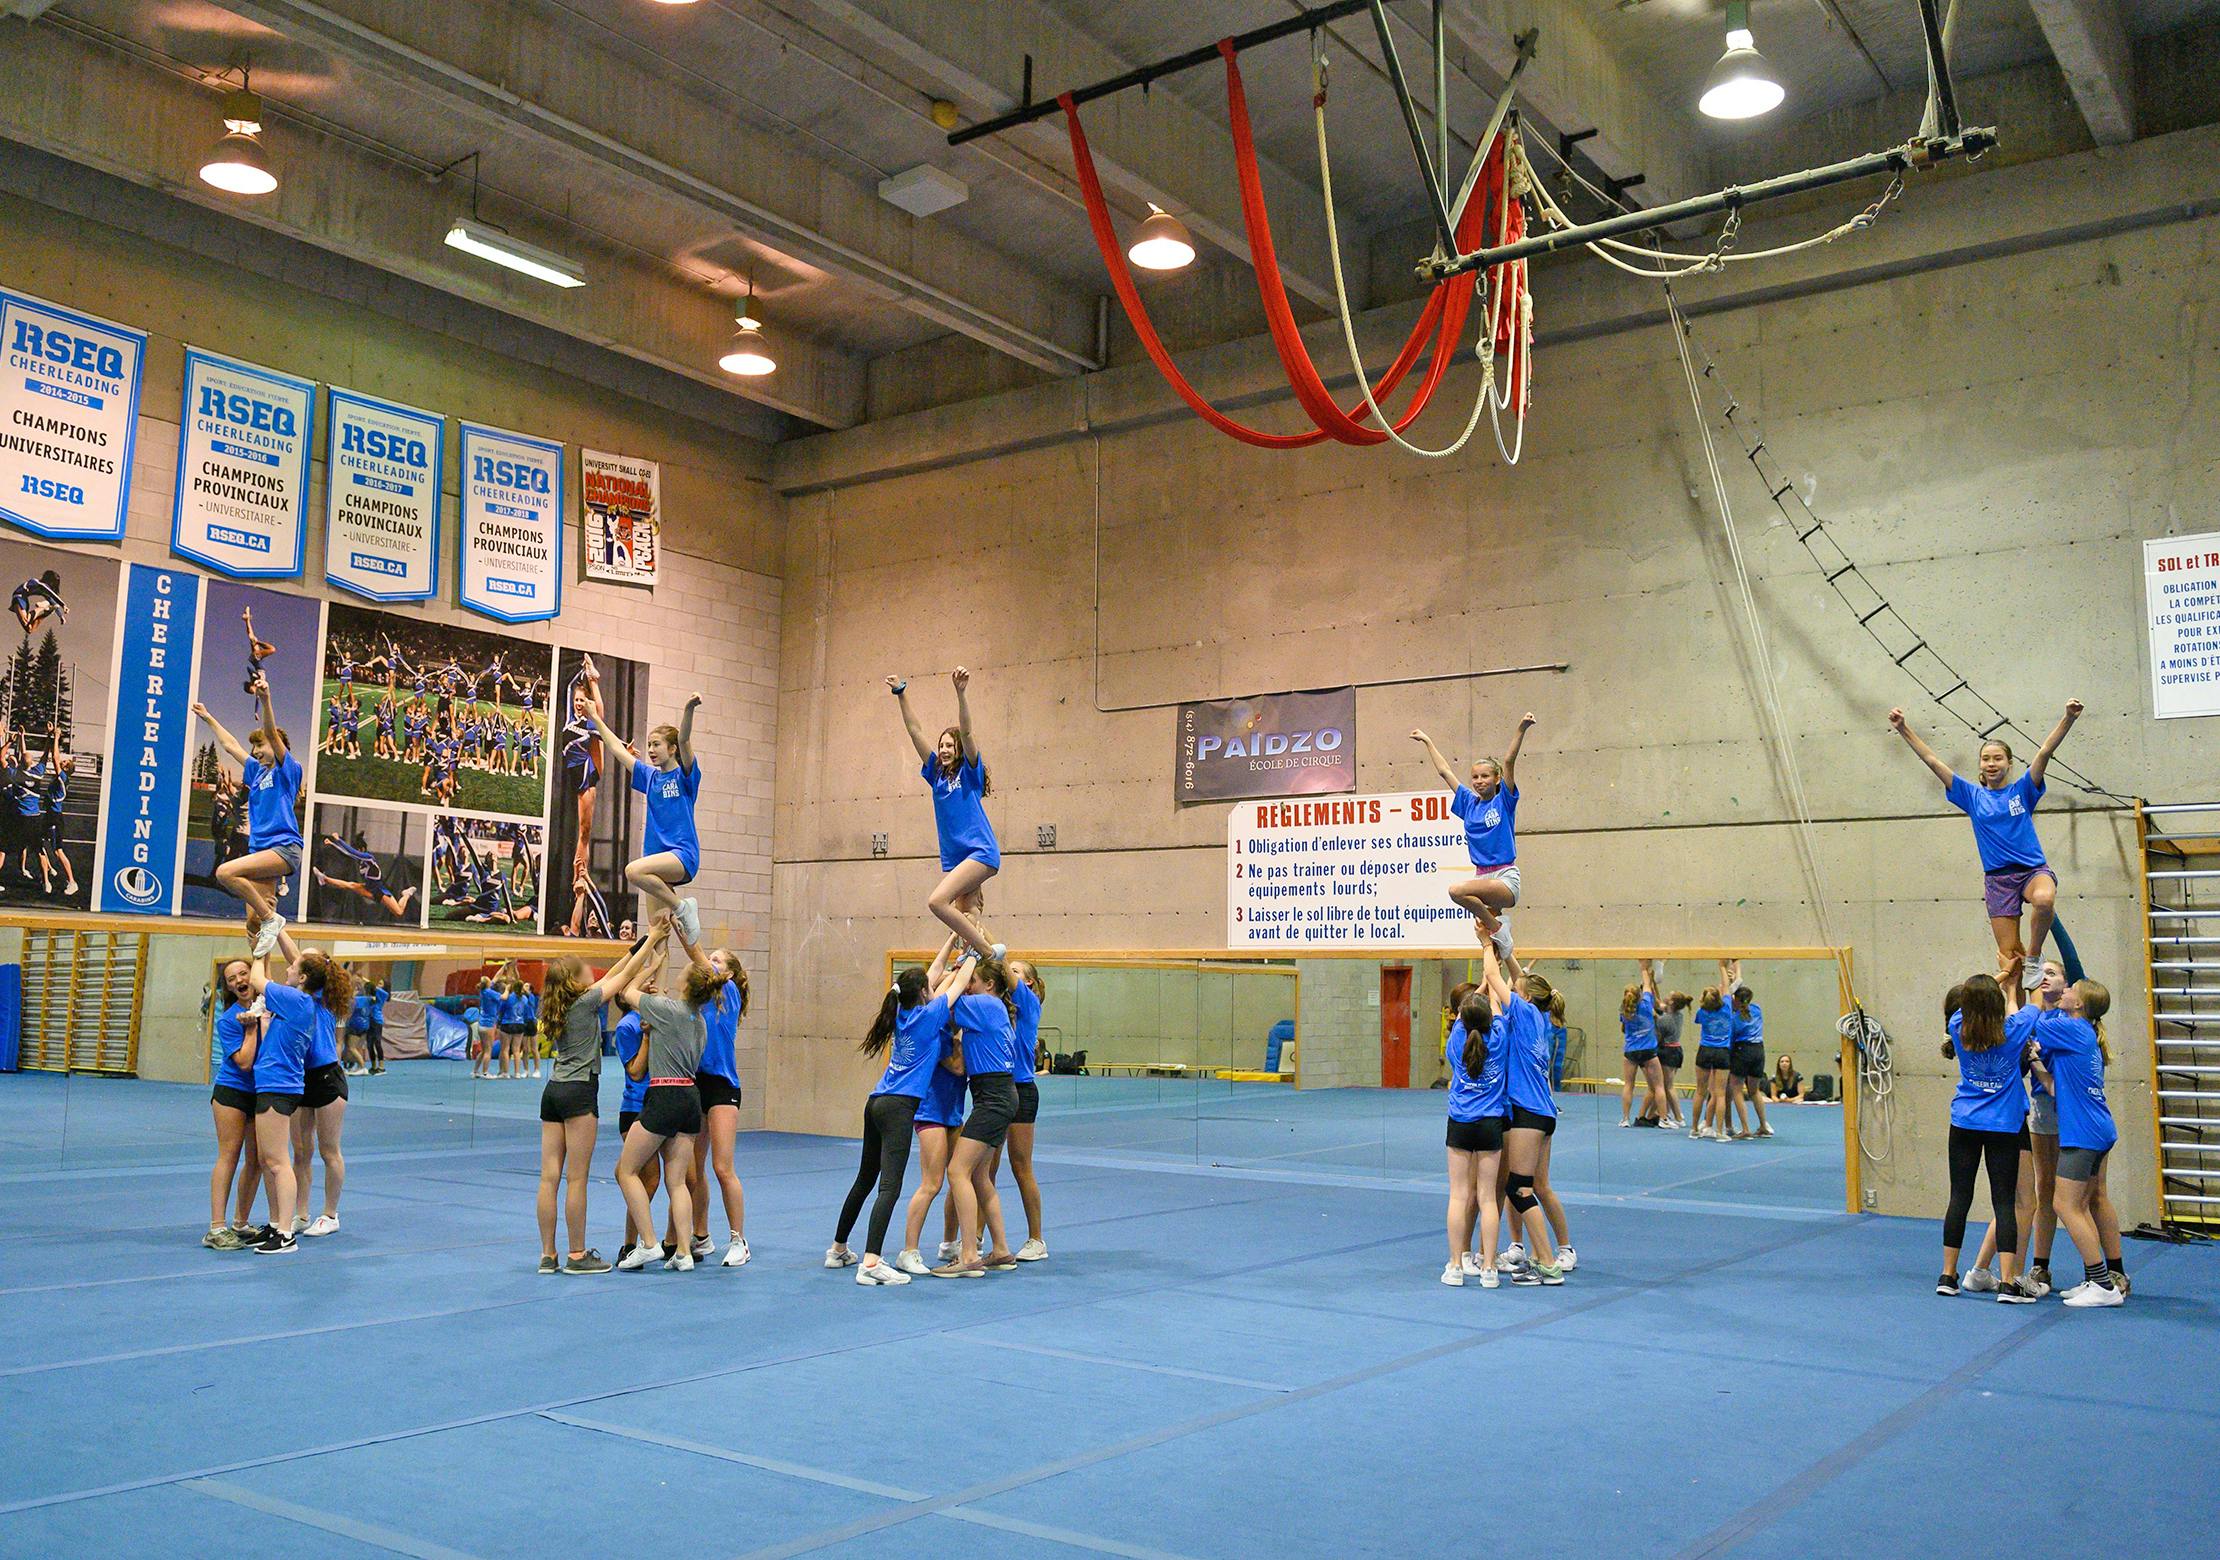 École Carabins cheerleading 12 à 16 ans - Écoles Carabins CEPSUM